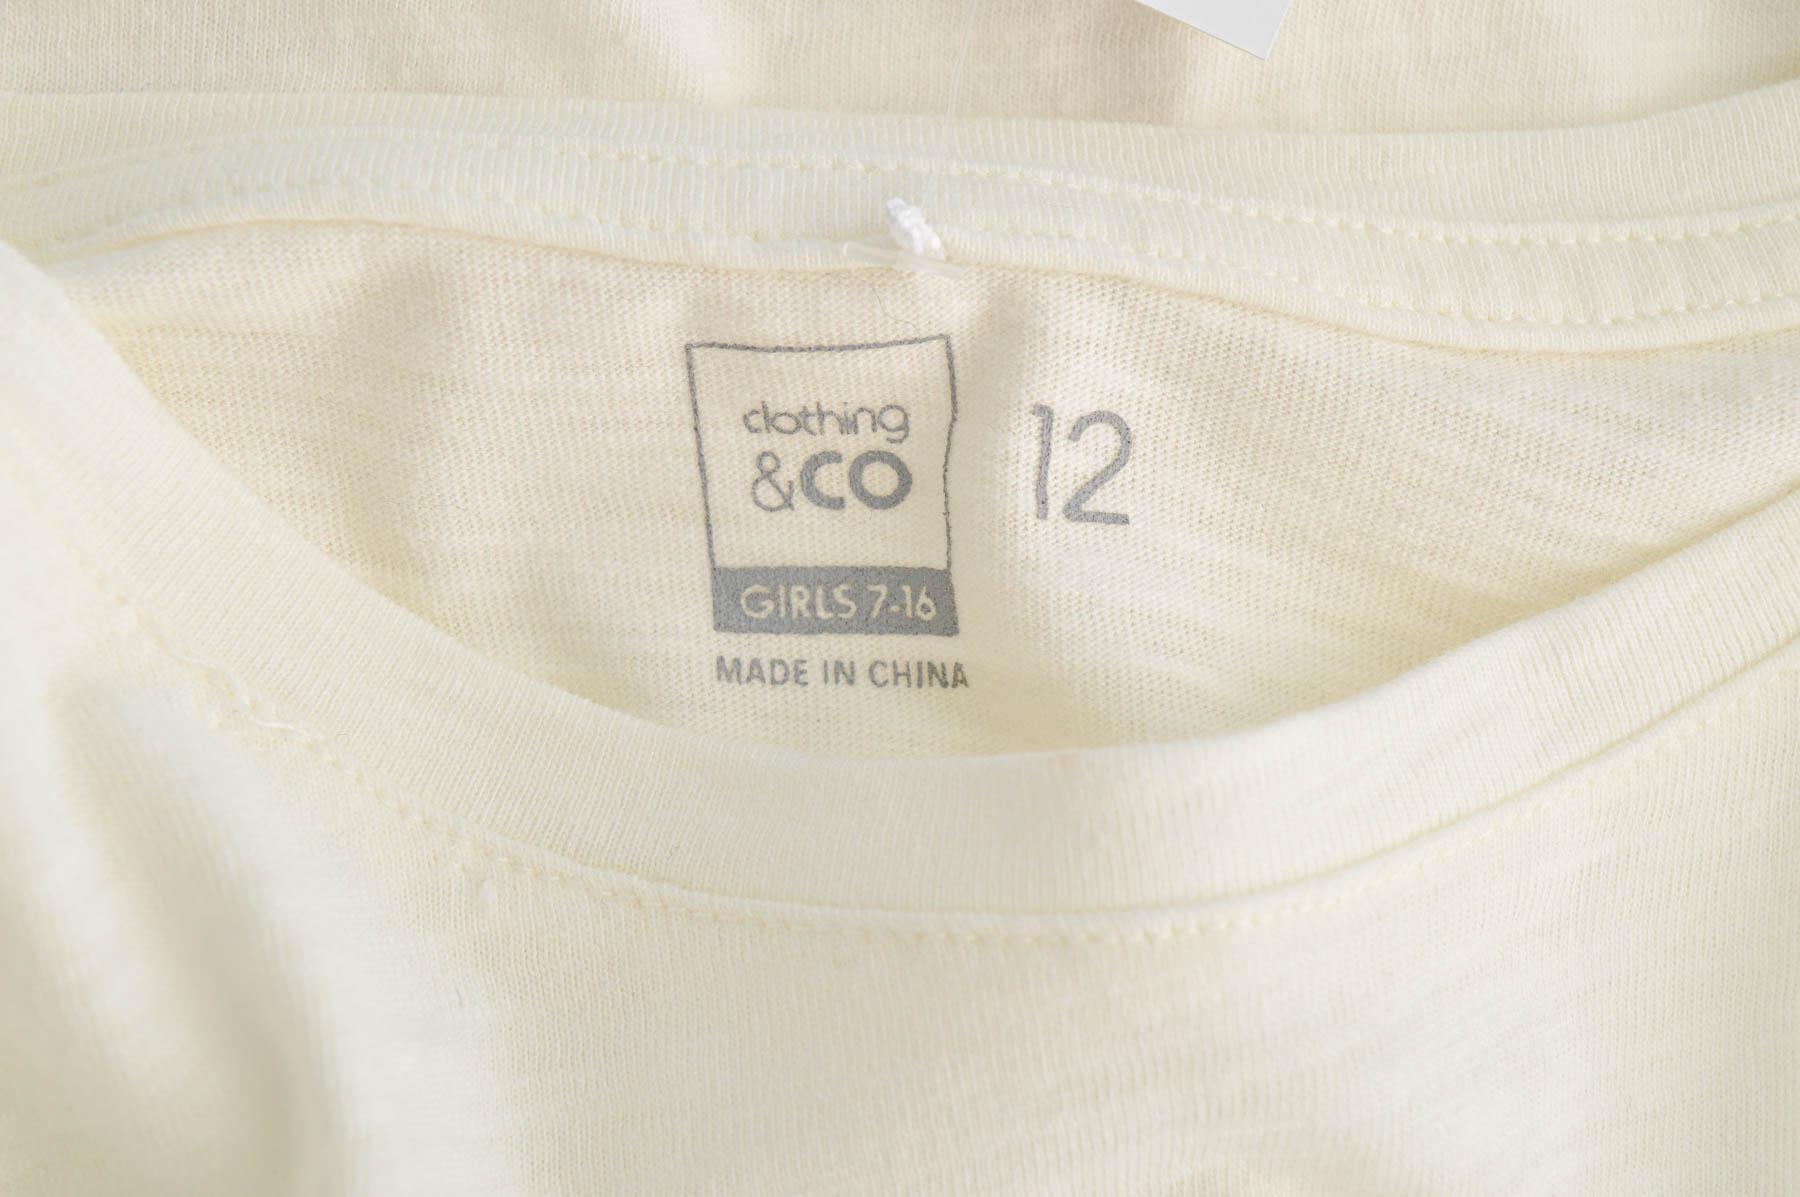 Bluzka dla dziewczynki - Clothing & CO - 2